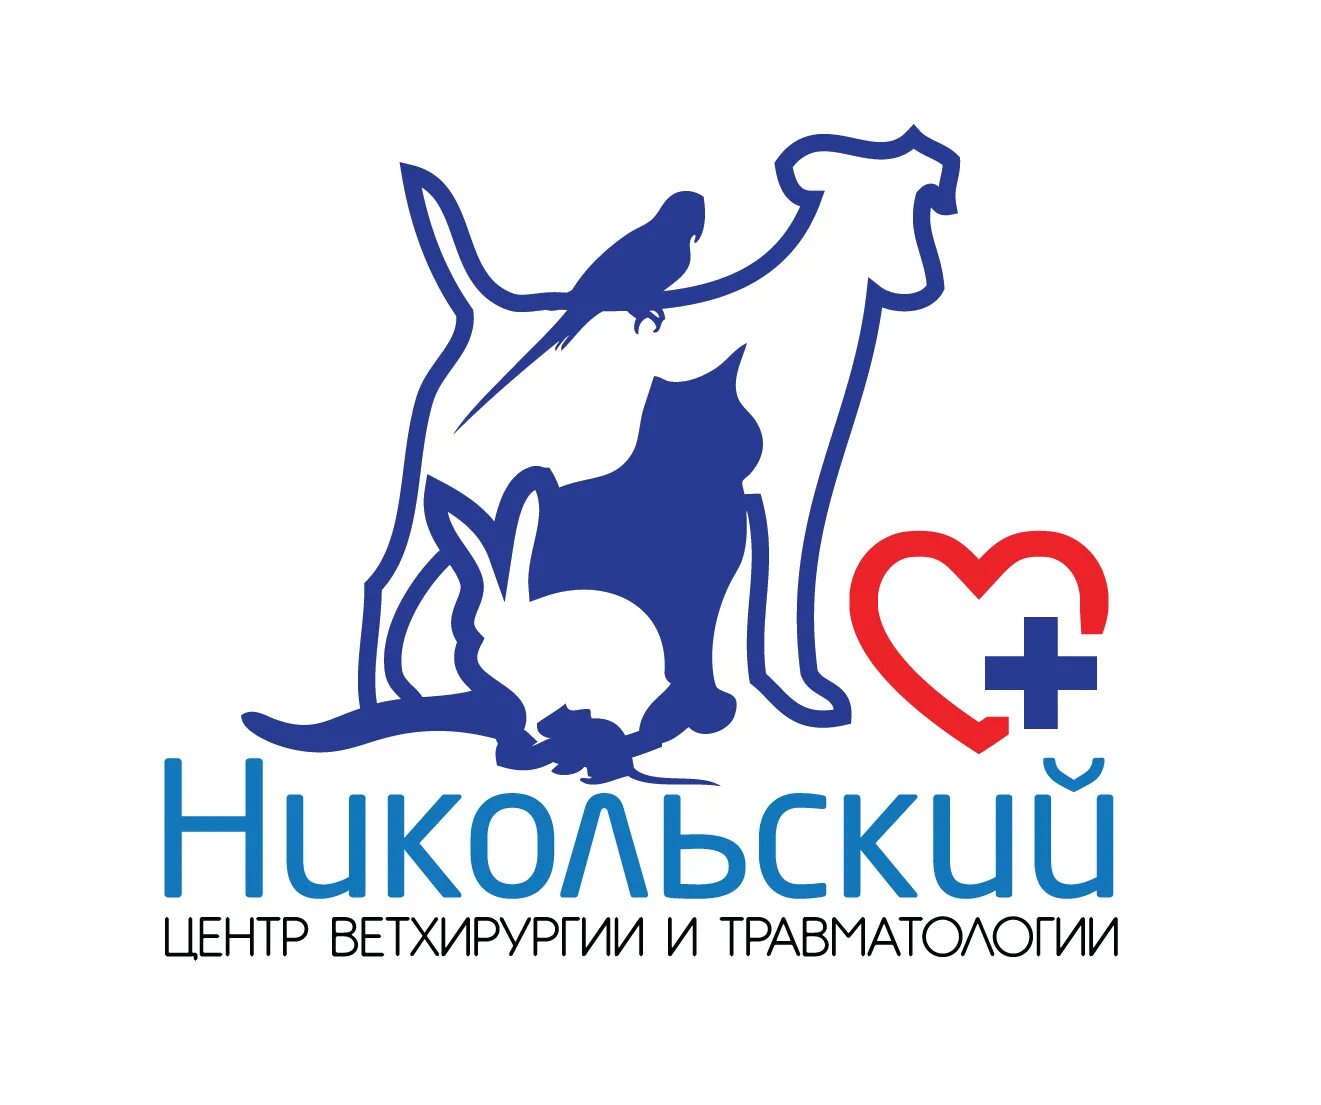 Компания никольского. Ветеринарная клиника Никольский Самара. Ветеринарная клиника баннер. Ветеринарный логотип. Логотип ветеринарной клиники.